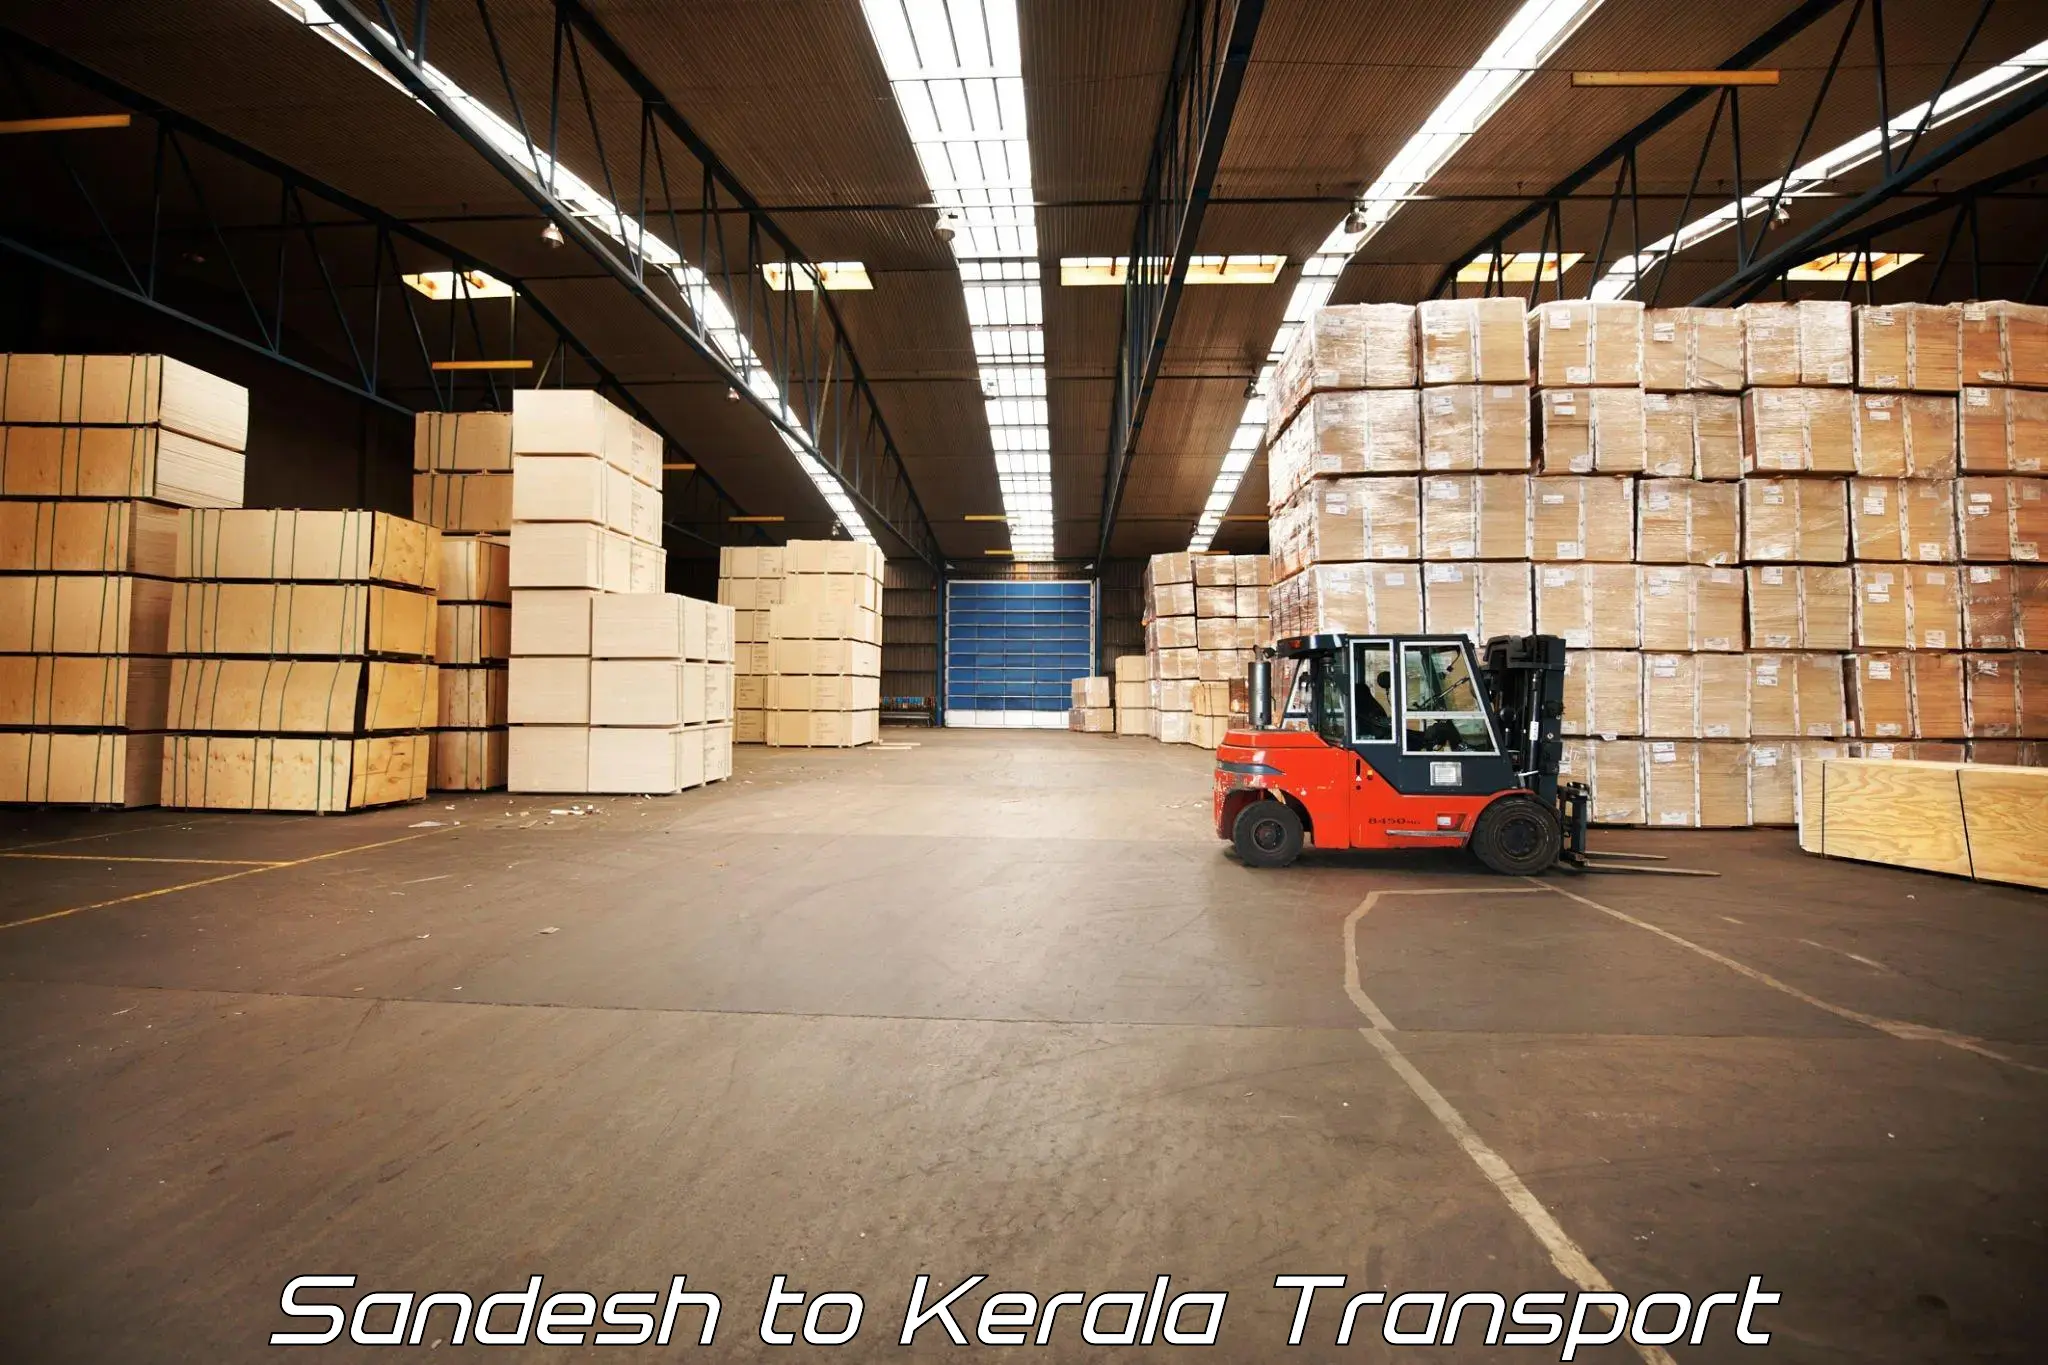 Lorry transport service in Sandesh to Karimba